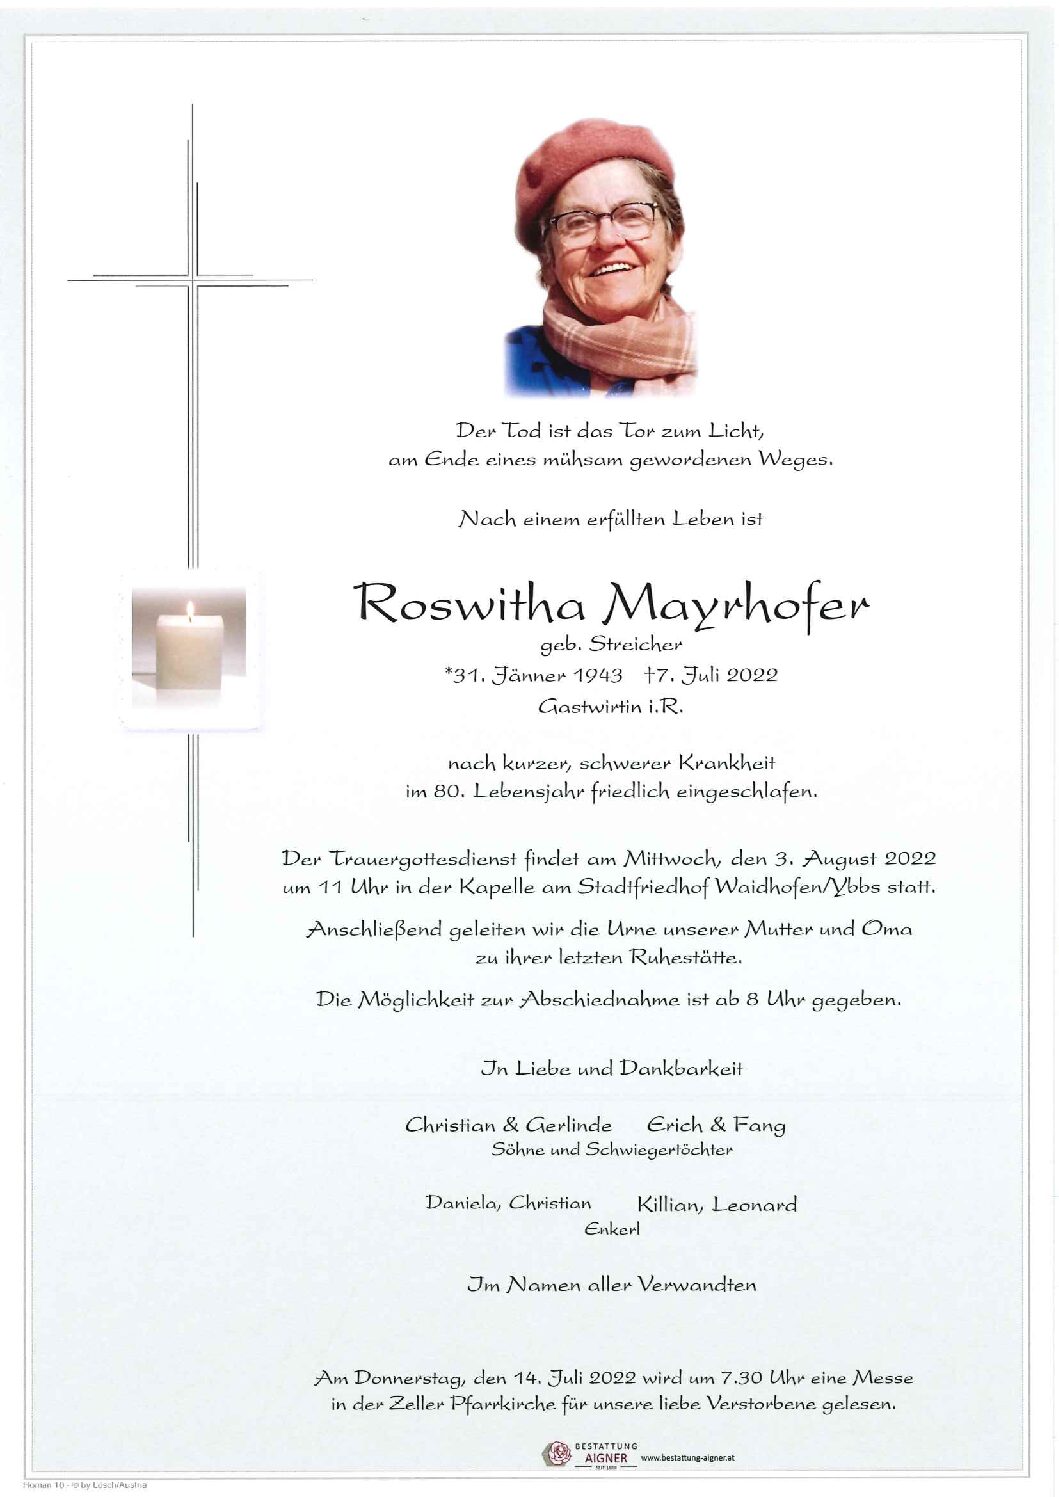 Roswitha Mayrhofer